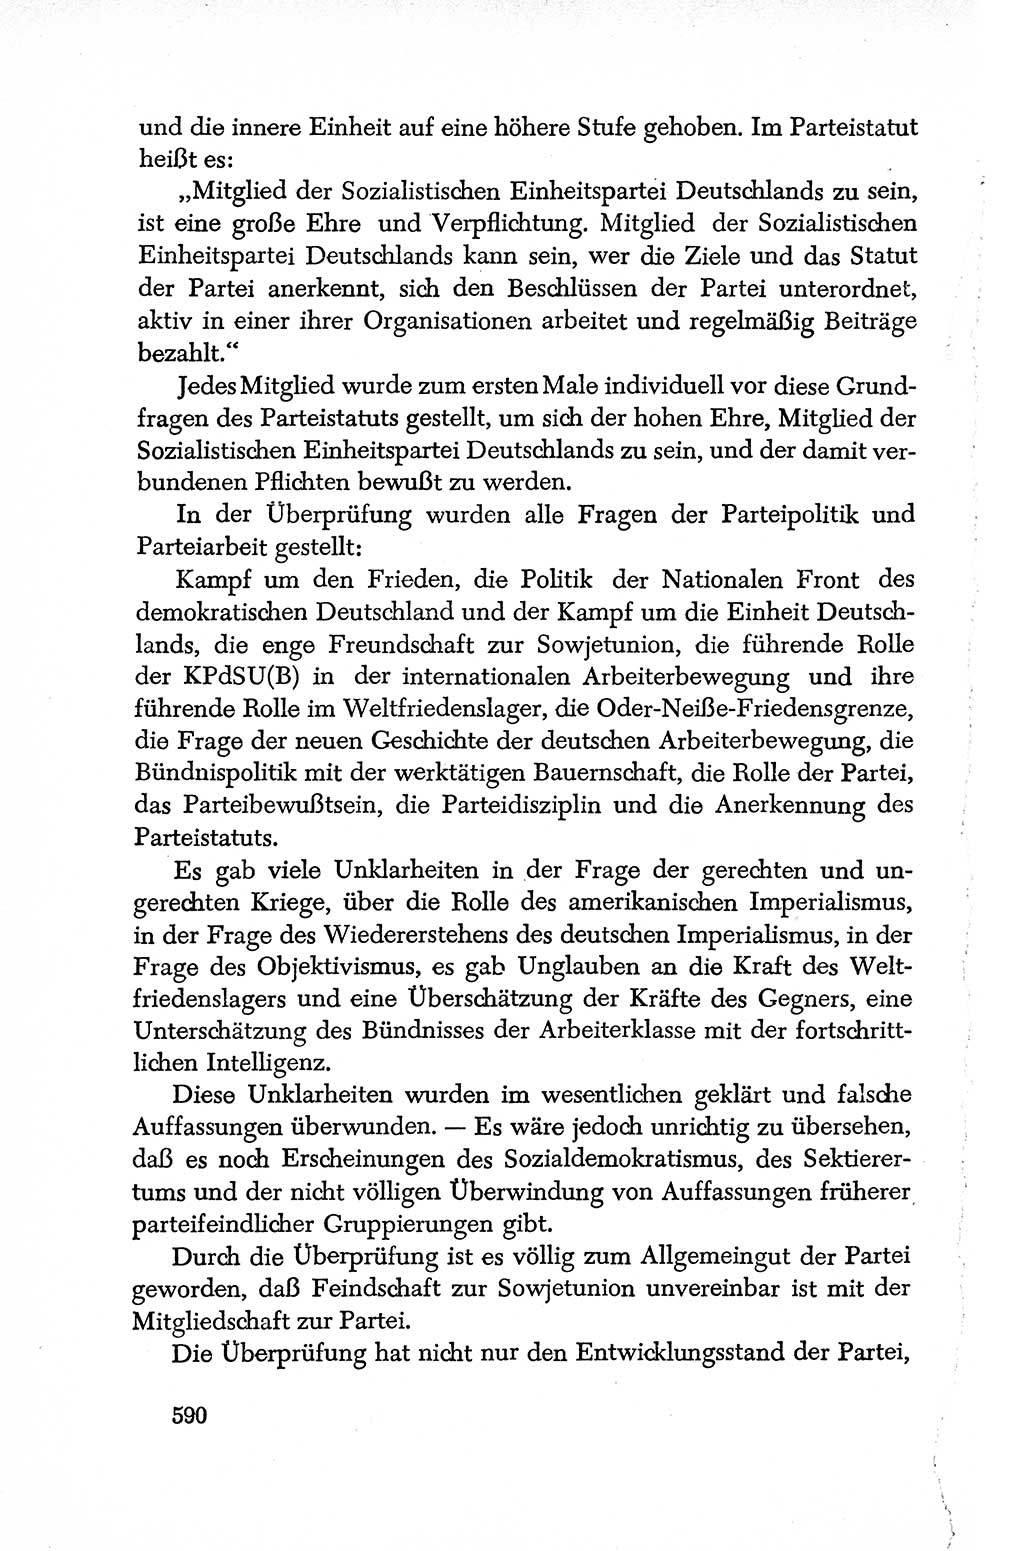 Dokumente der Sozialistischen Einheitspartei Deutschlands (SED) [Deutsche Demokratische Republik (DDR)] 1950-1952, Seite 590 (Dok. SED DDR 1950-1952, S. 590)